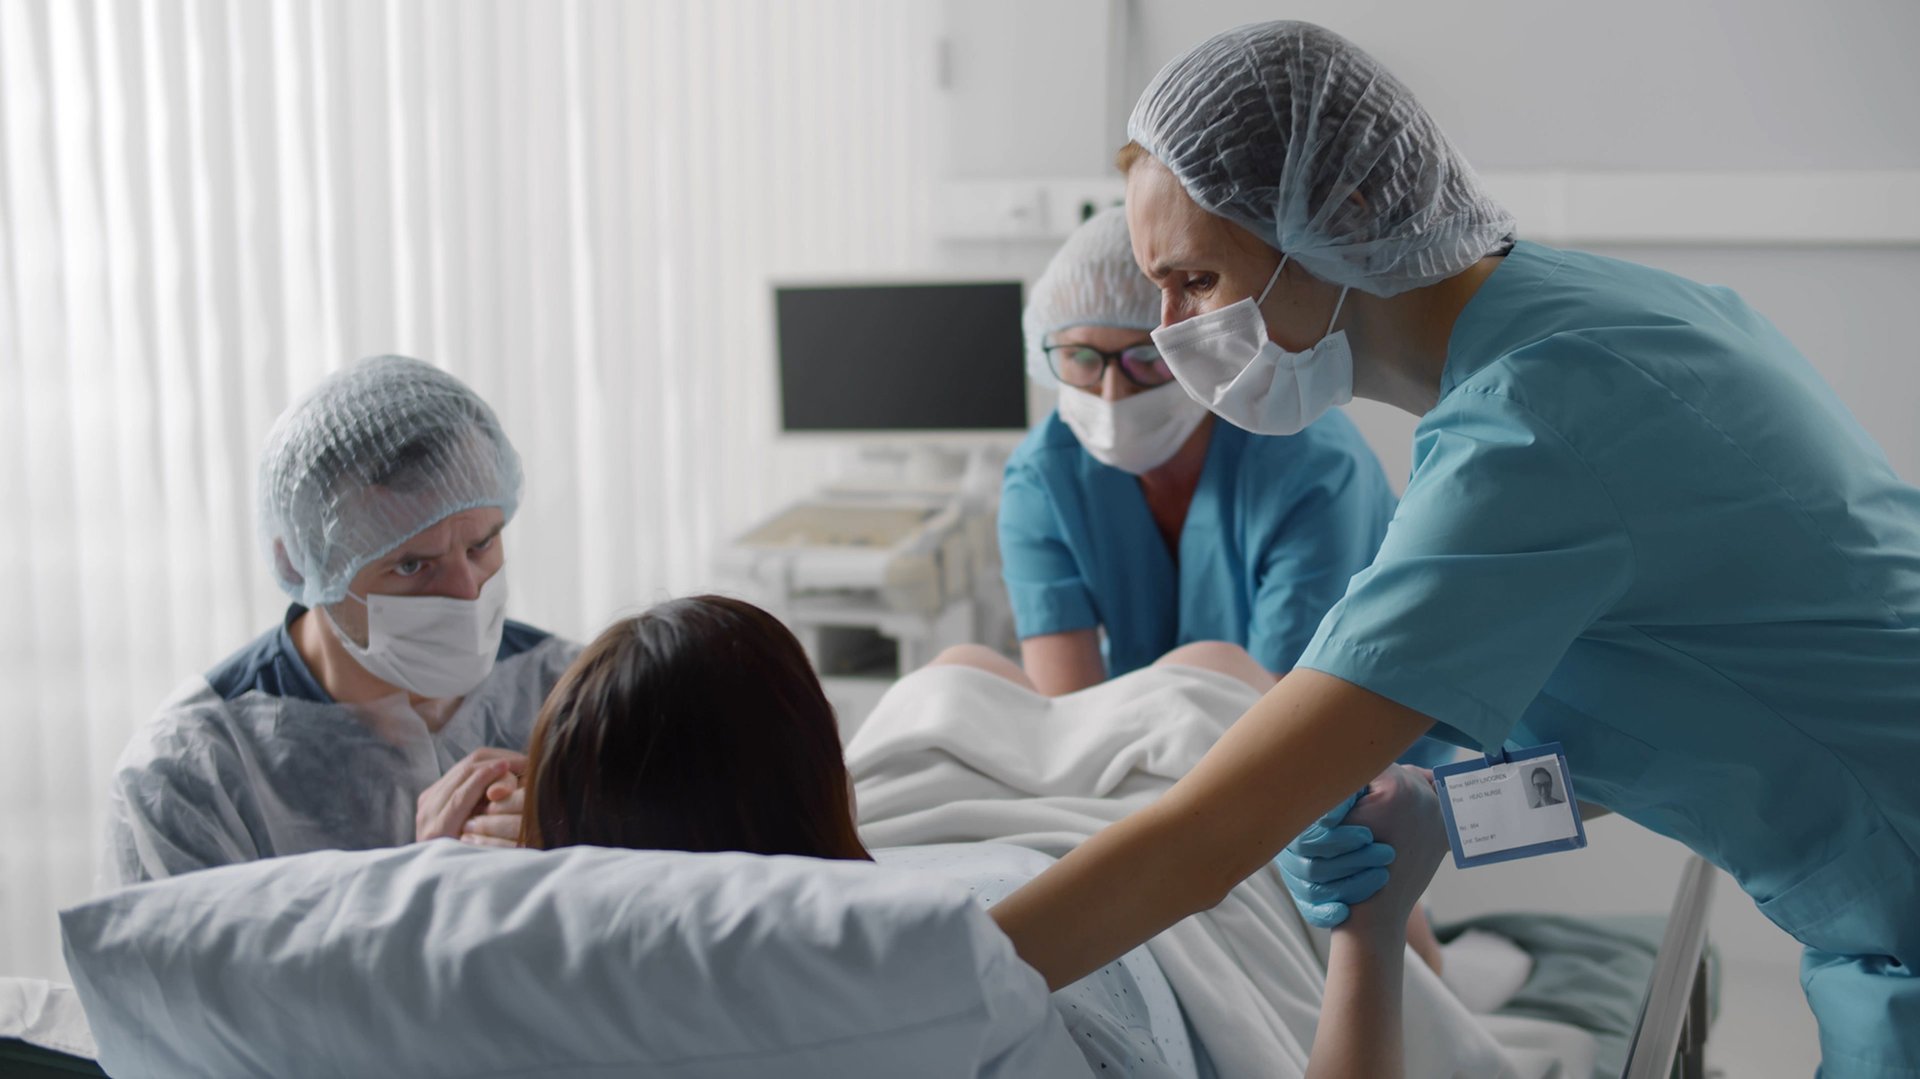 Polozne odbieraja porod w sali szpitalnej